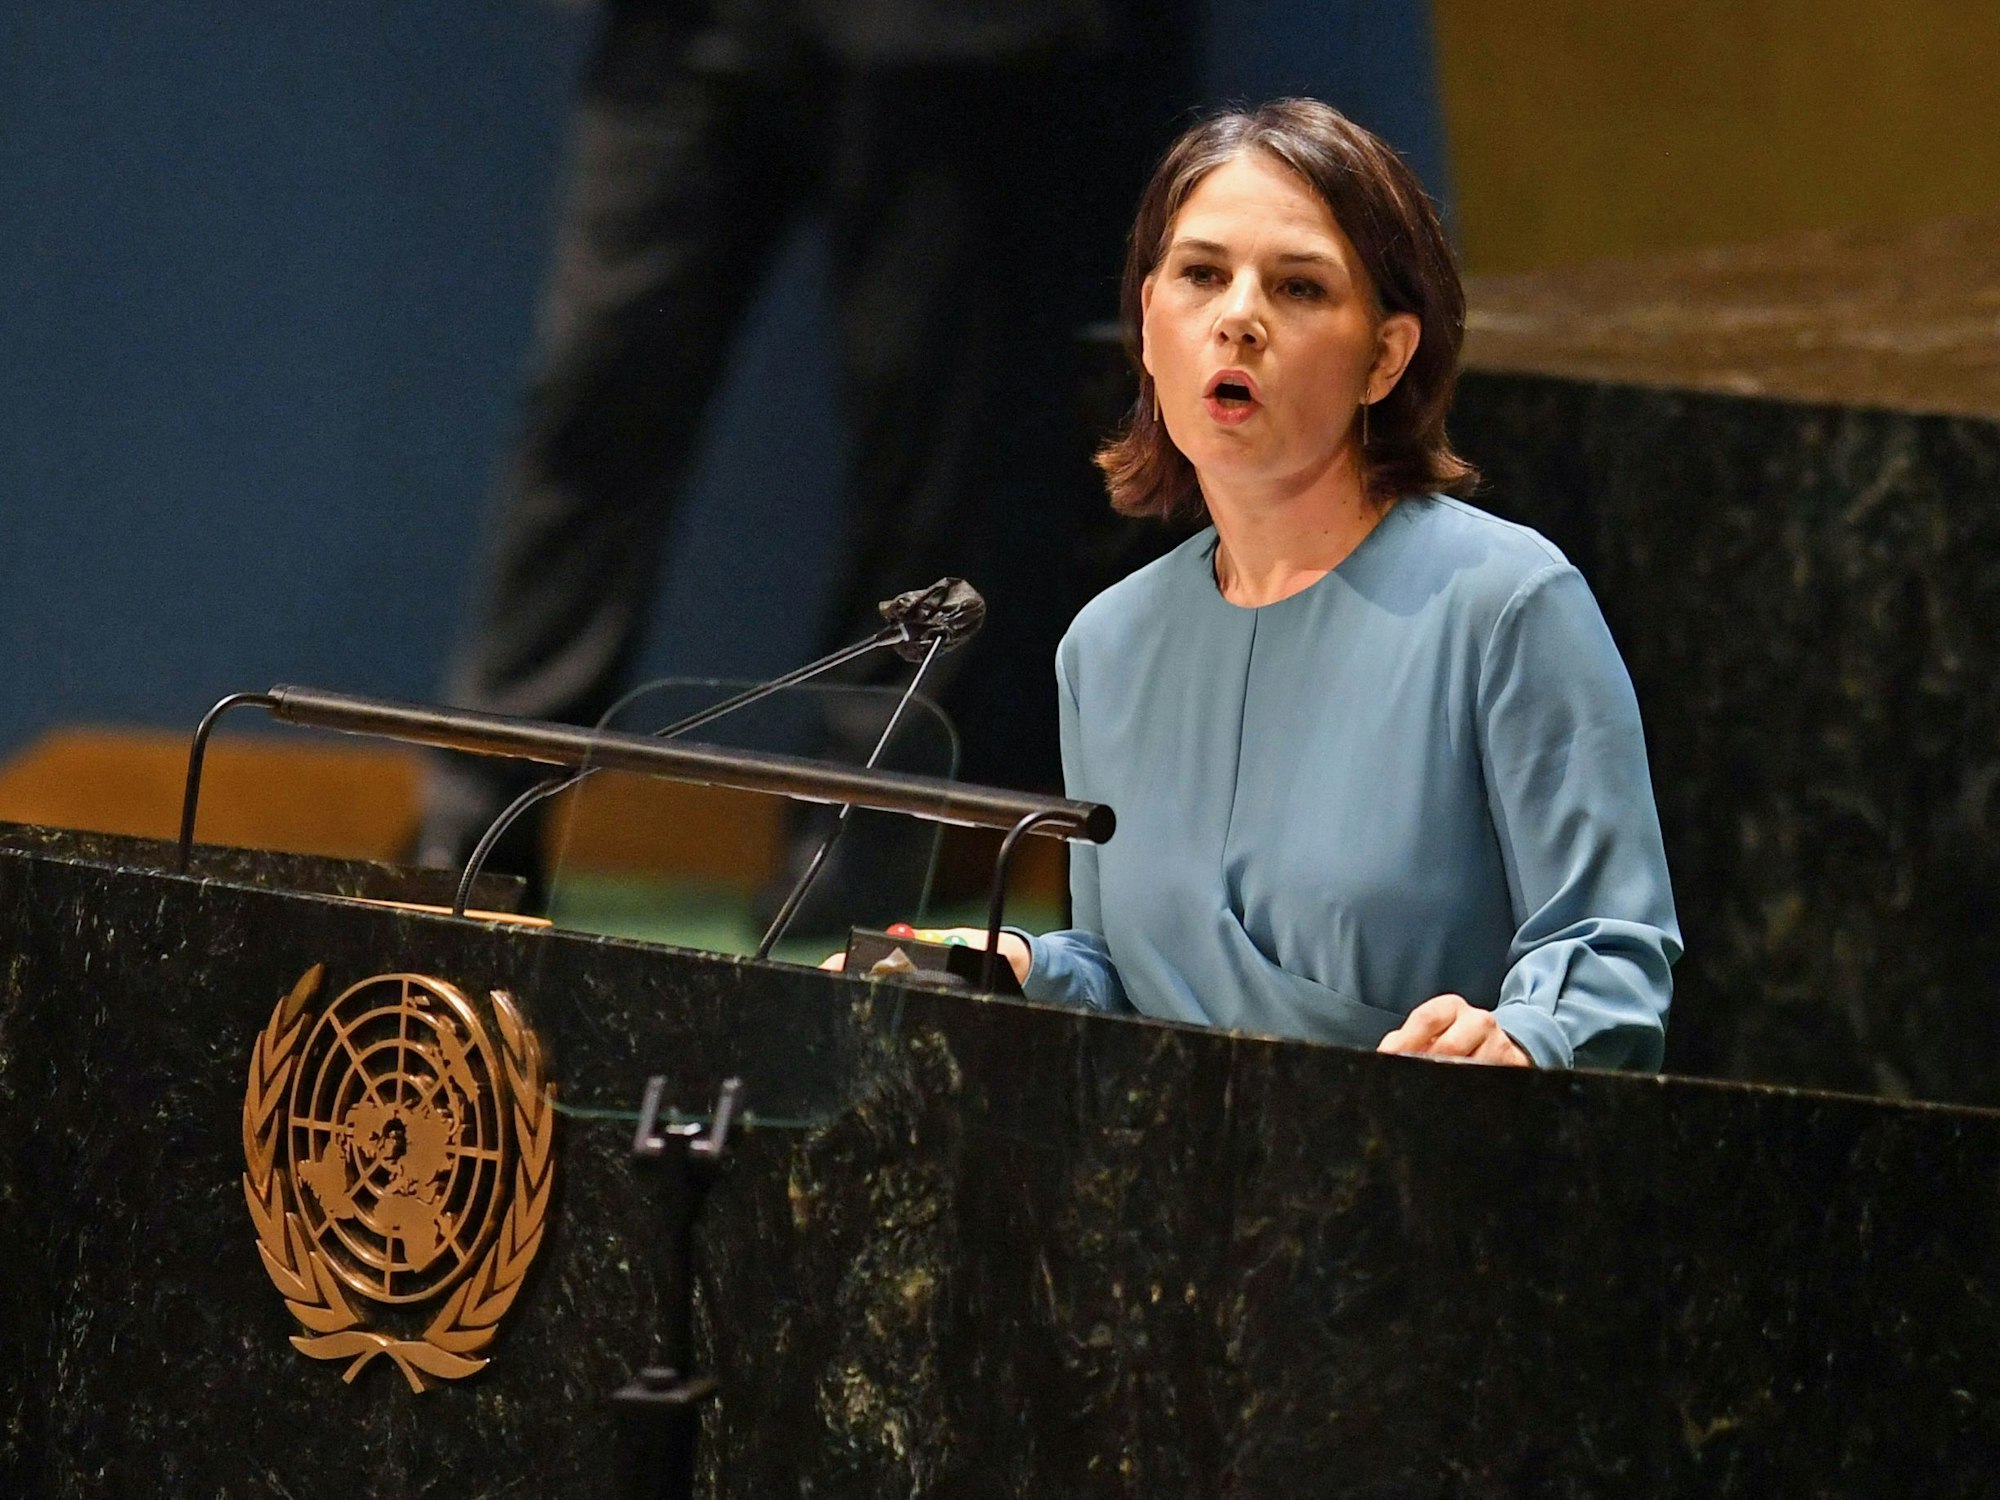 Annalena Baerbock bei der UN-Dringlichkeitssitzung am Dienstag (1. März 2022). Die Bundesaußenministerin beeindruckte und entlarvte die russische Kriegstreiberei vollumfänglich.